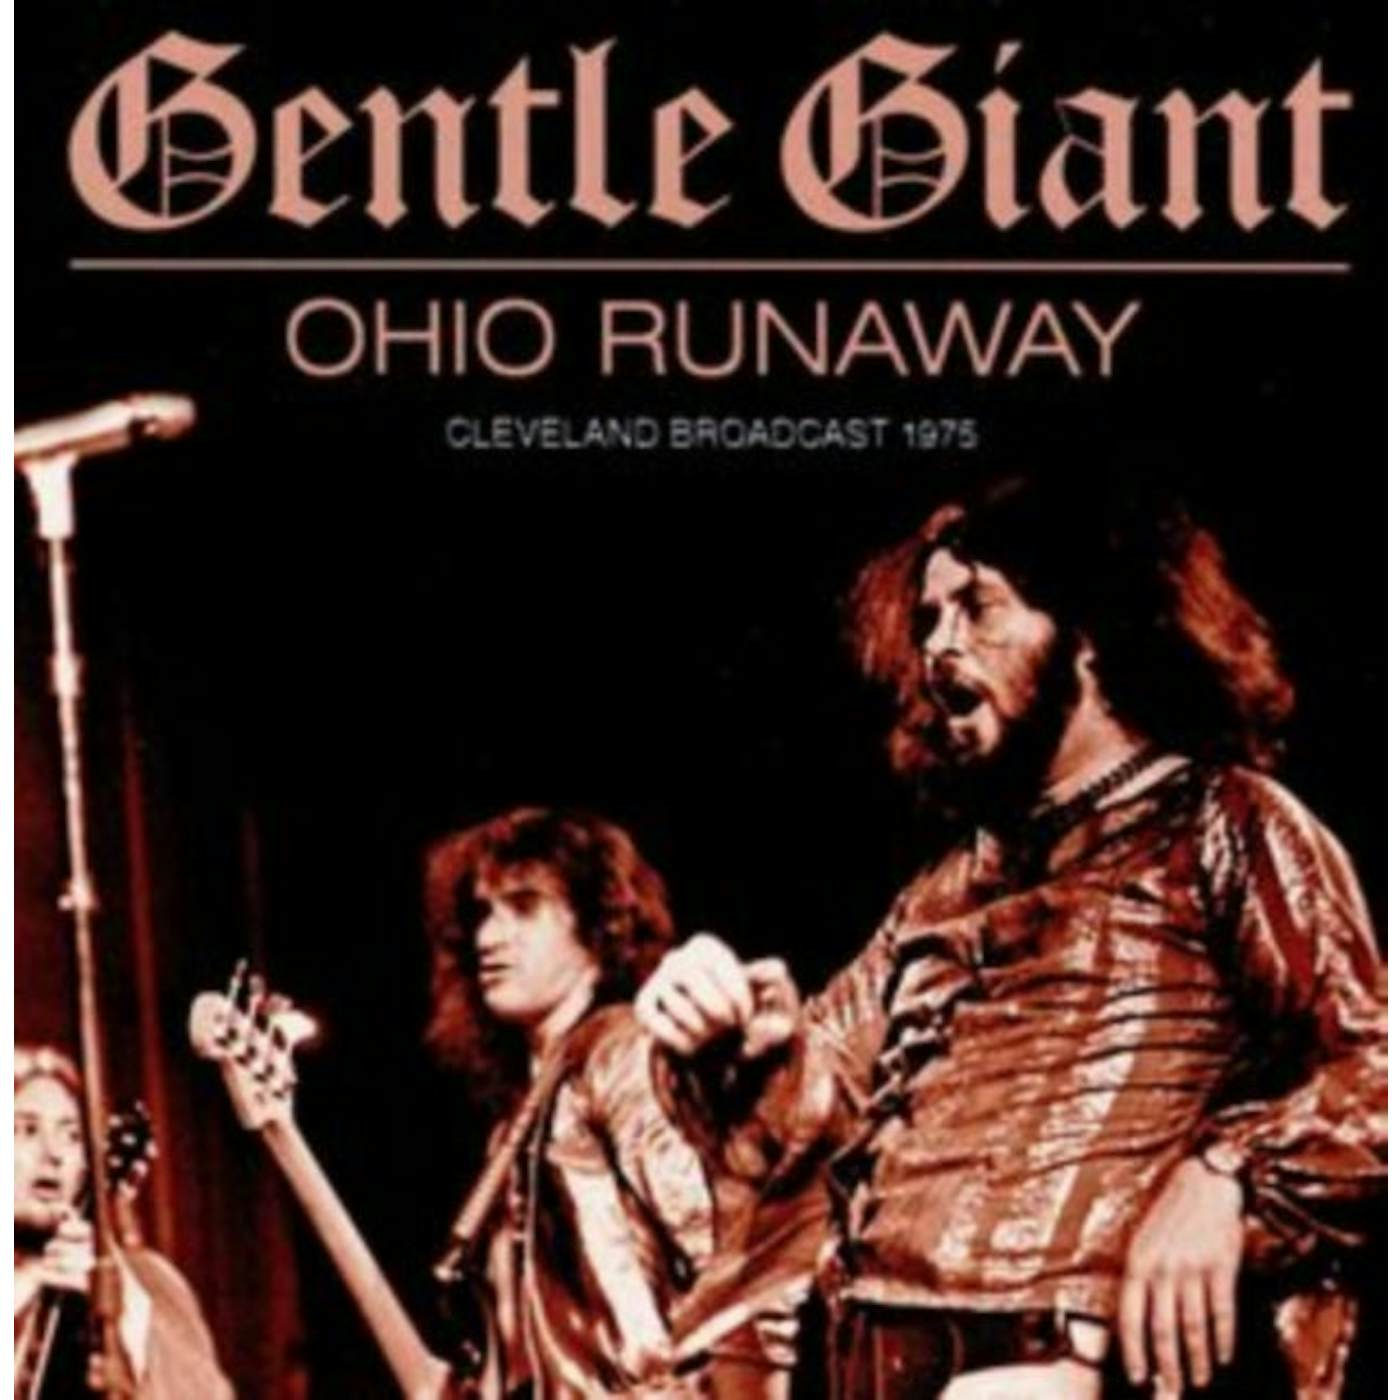 Gentle Giant CD - Ohio Runaway